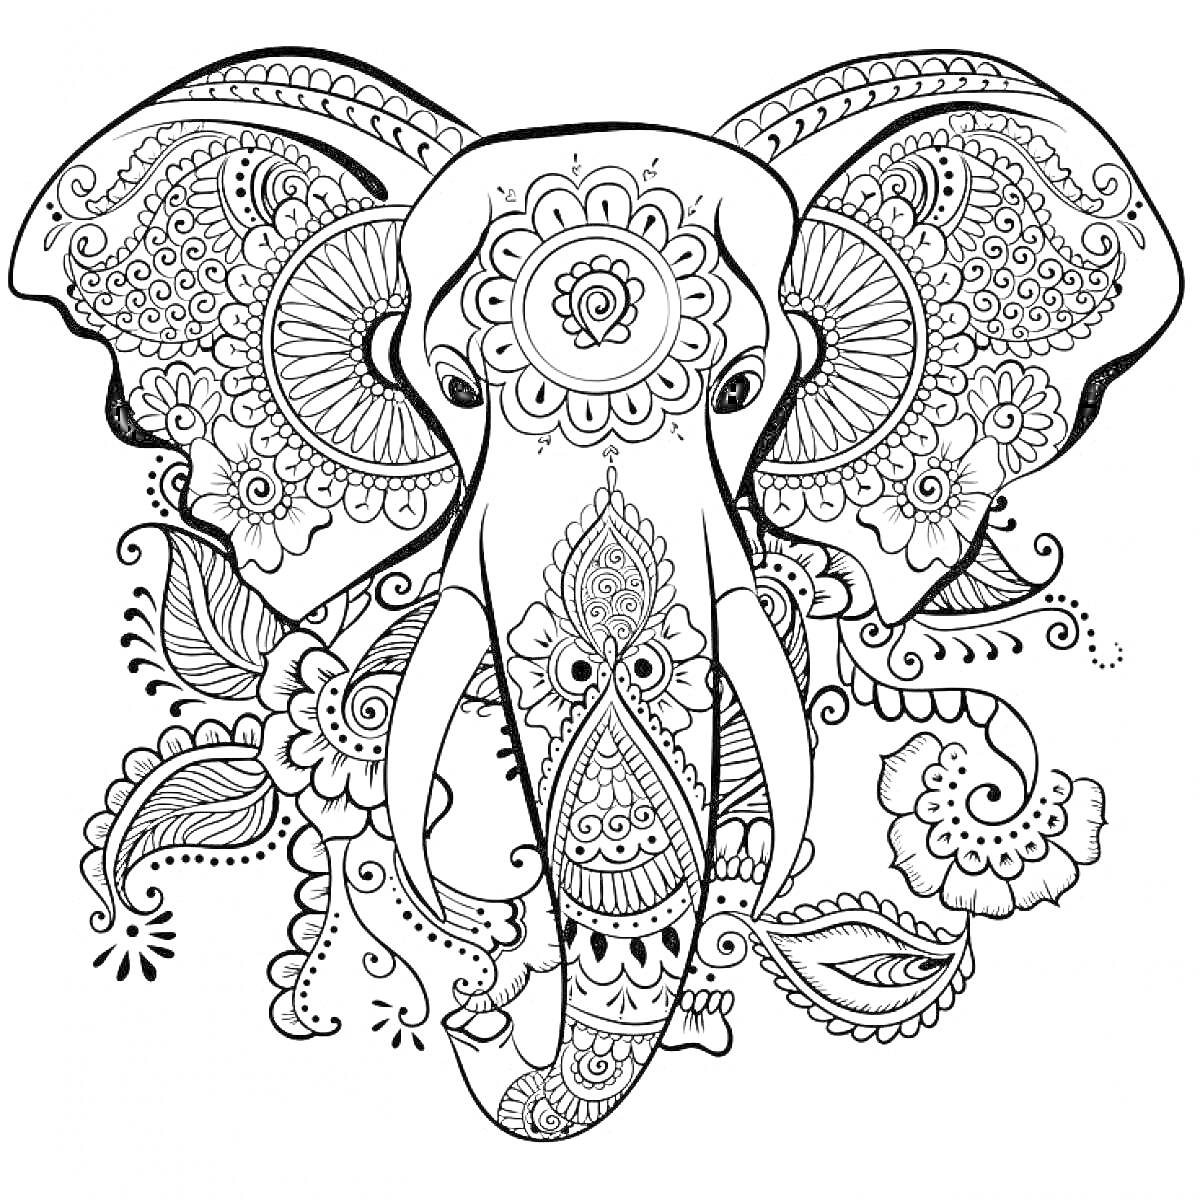 Раскраска Раскраска слона с декоративными узорами, включающая цветочные орнаменты и листовые элементы